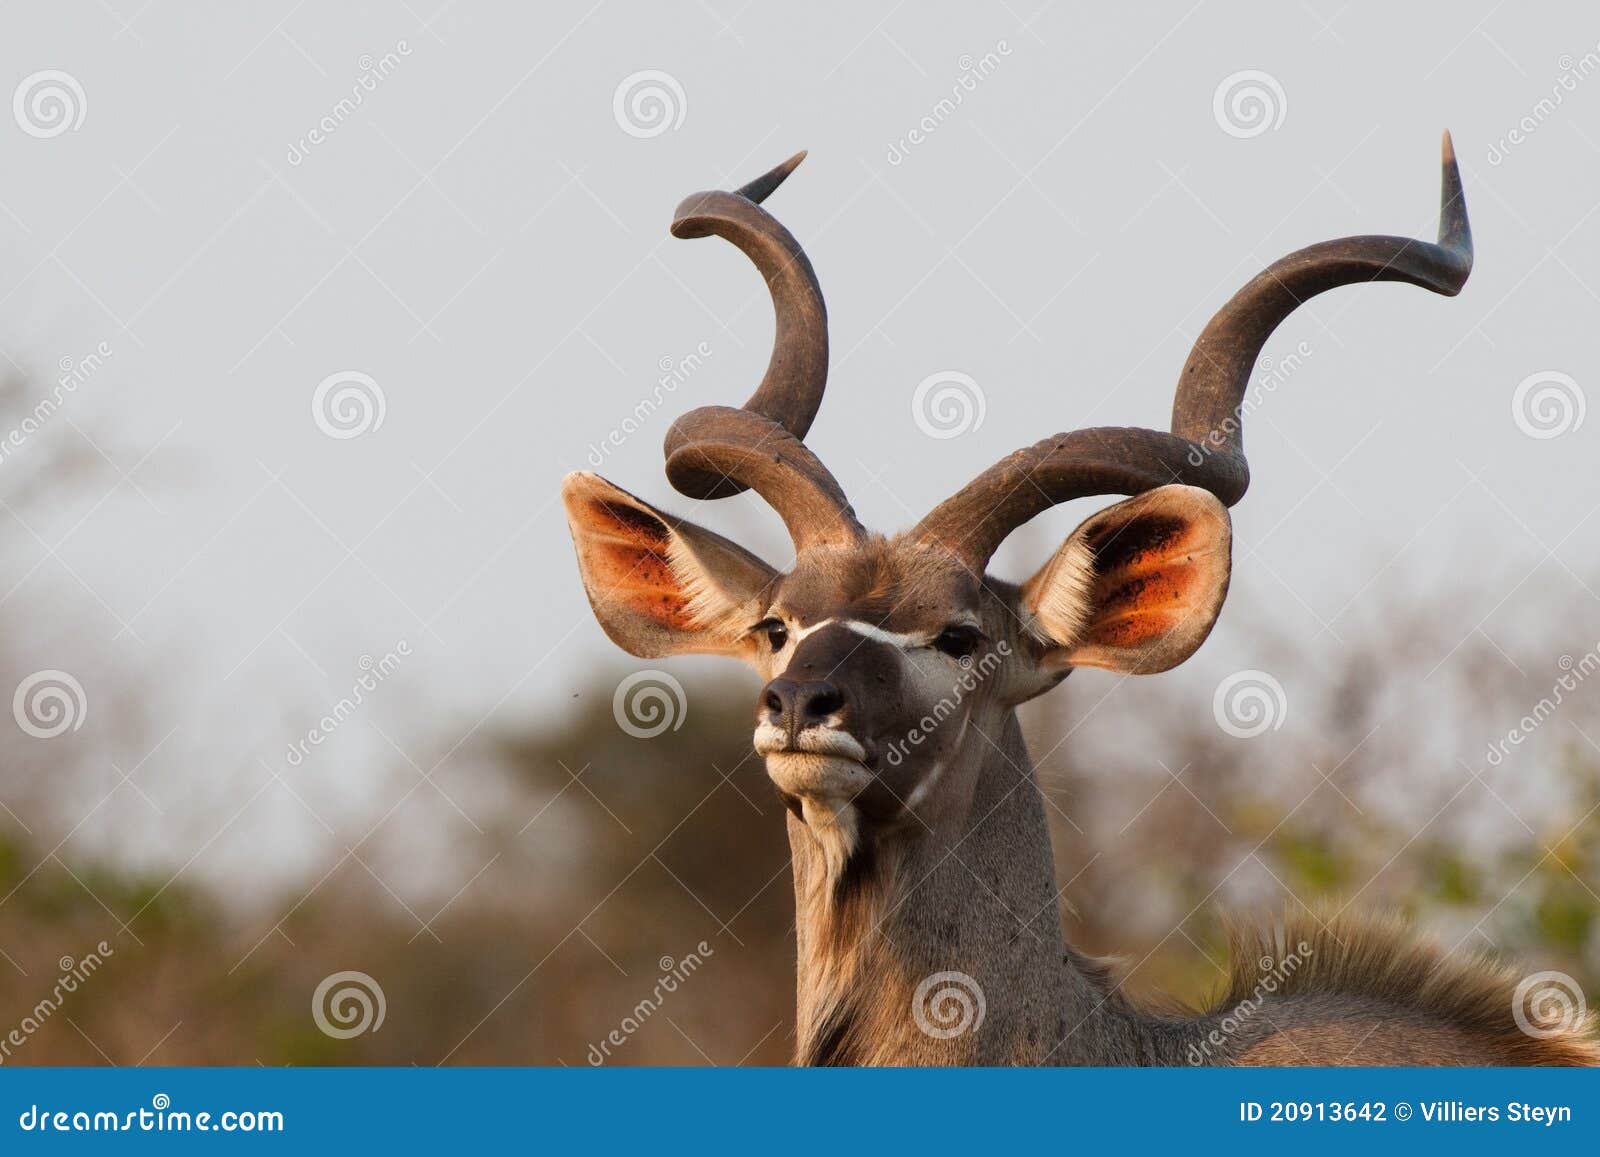 kudu bull